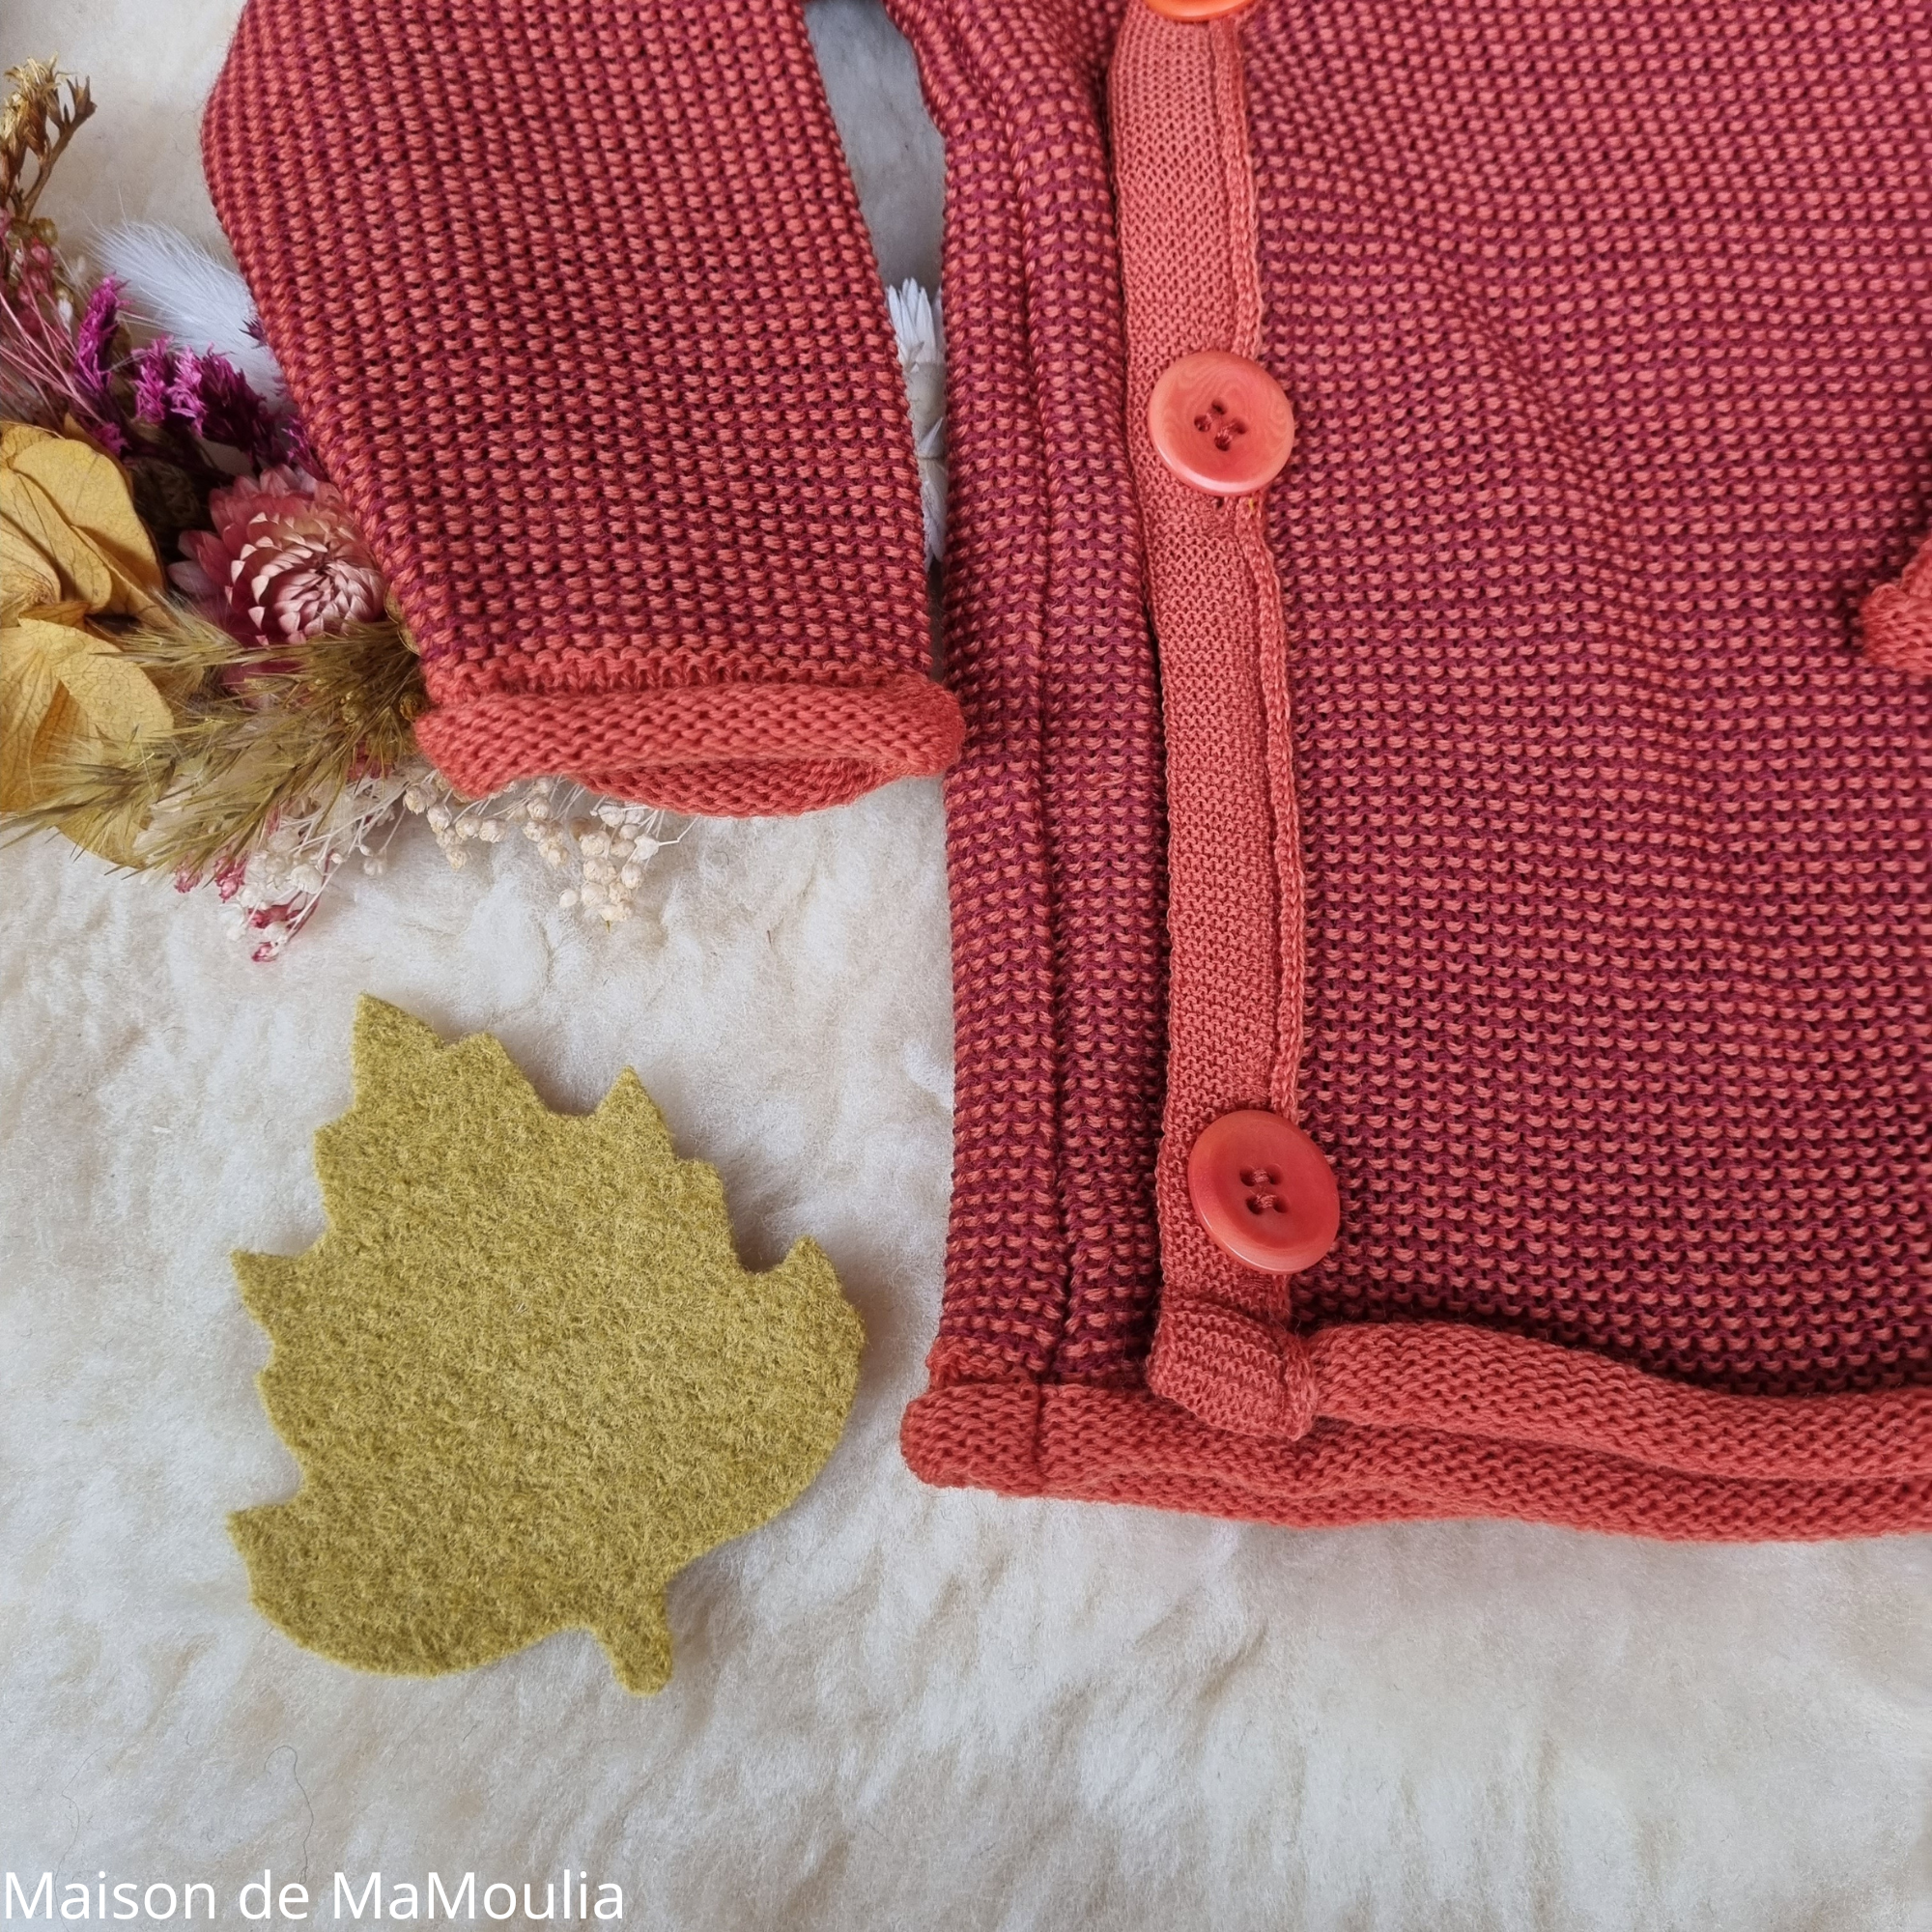 disana-melange-jacket-gilet-pure-laine-merinos-tricotée-bebe-enfant-maison-de-mamoulia-rouge- orange